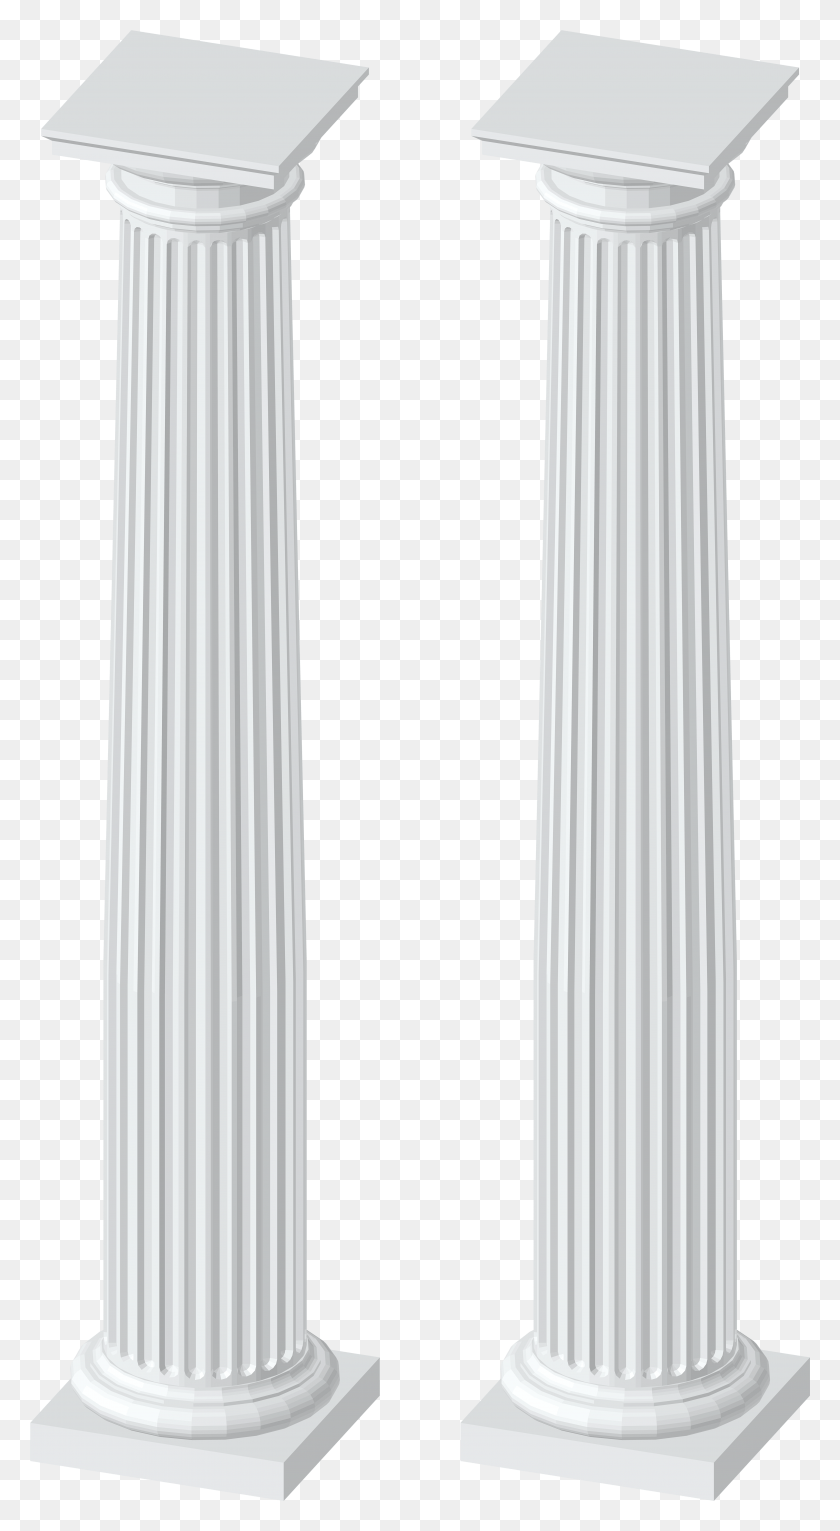 4148x7824 White Columns Transparent Clip Art Image Column, Architecture, Building, Pillar HD PNG Download